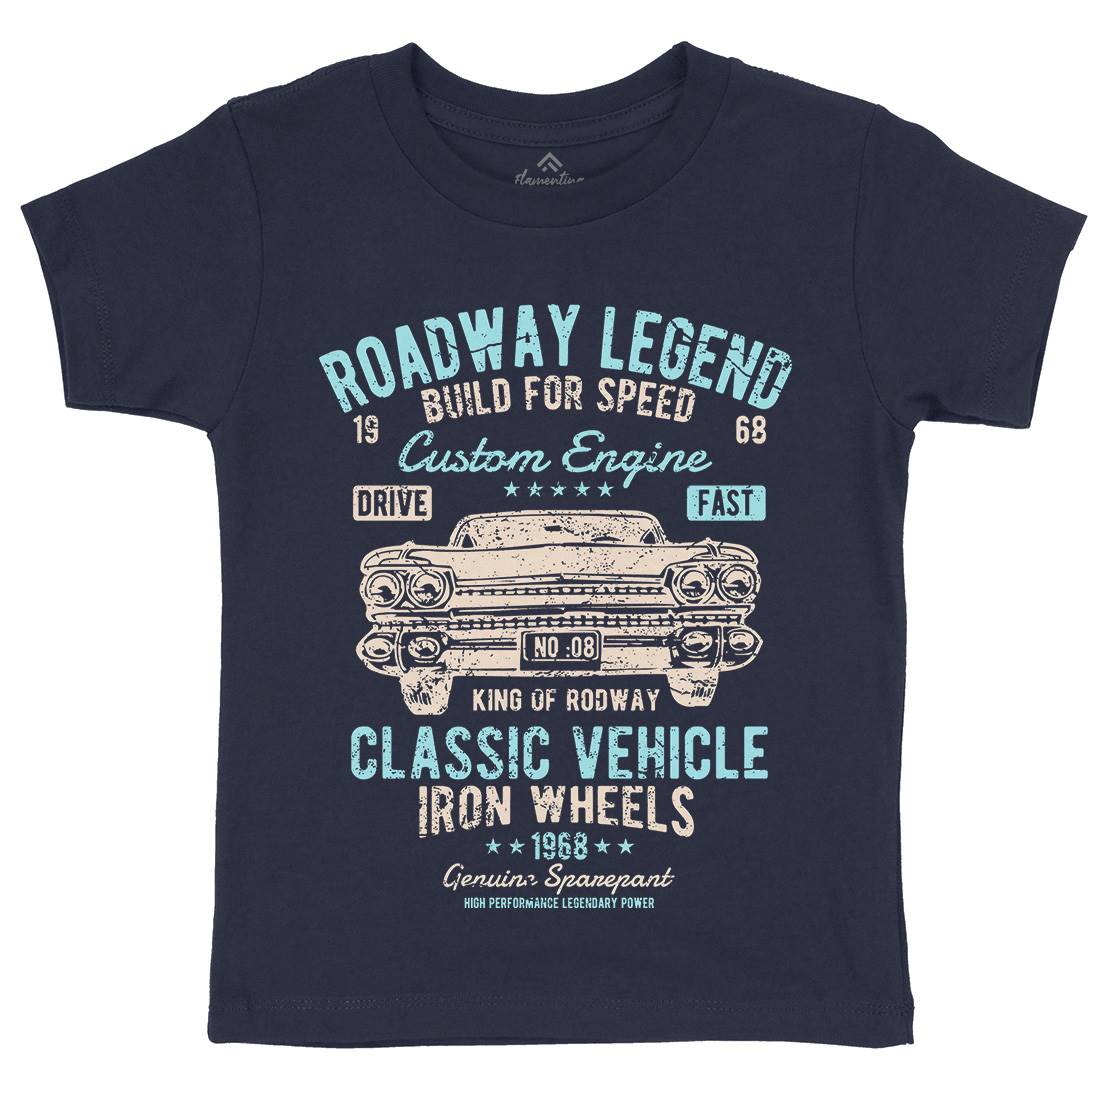 Roadway Legend Kids Organic Crew Neck T-Shirt Cars A125